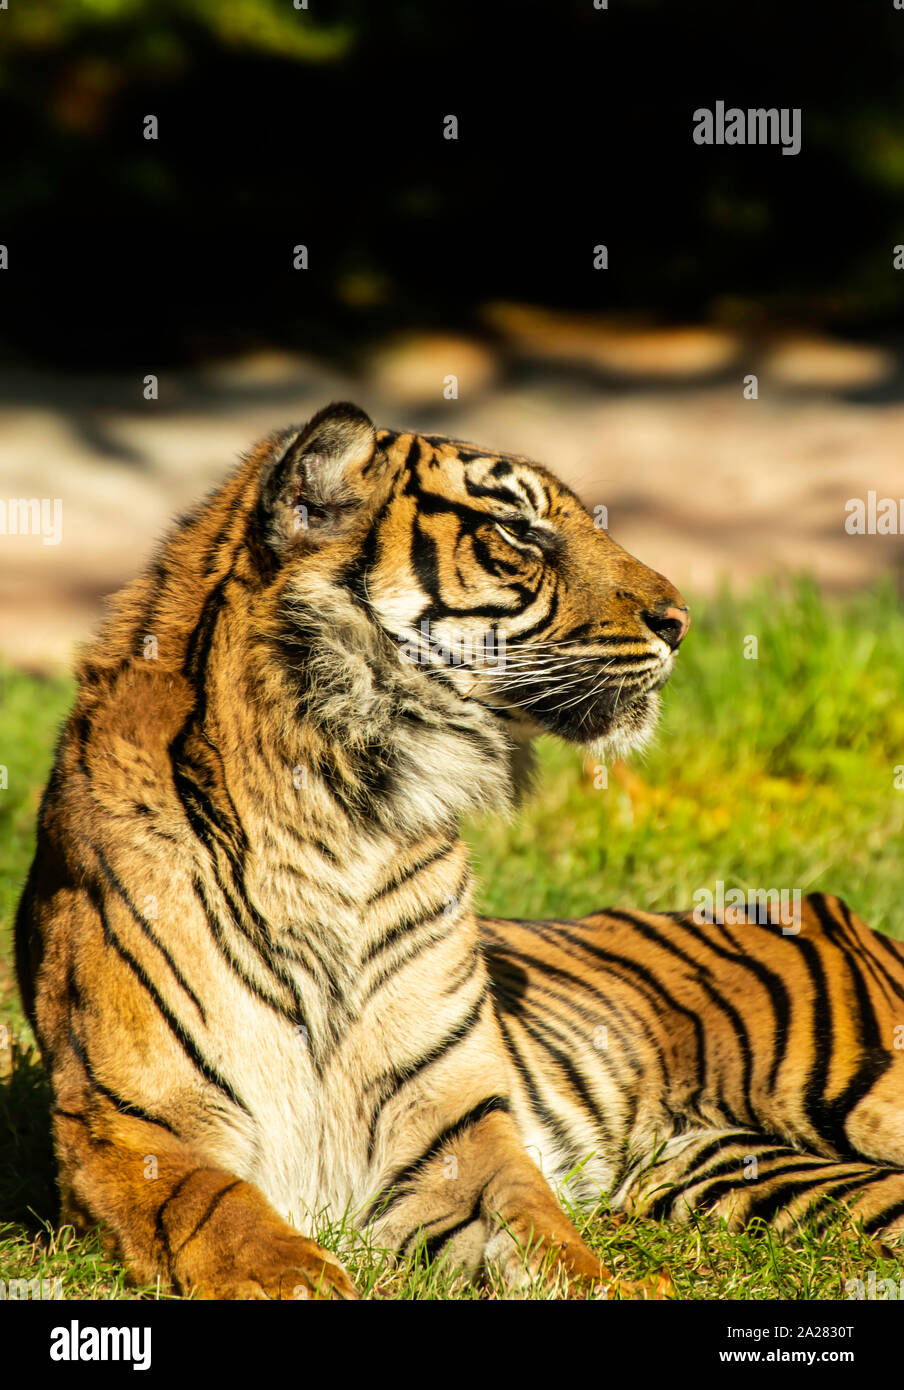 Le Tigre de Soleil sur le Zoo de Paignton, Devon, UK. Elles sont listées en tant que critique d'extinction sur la Liste rouge de l'UICN en 2008, Banque D'Images